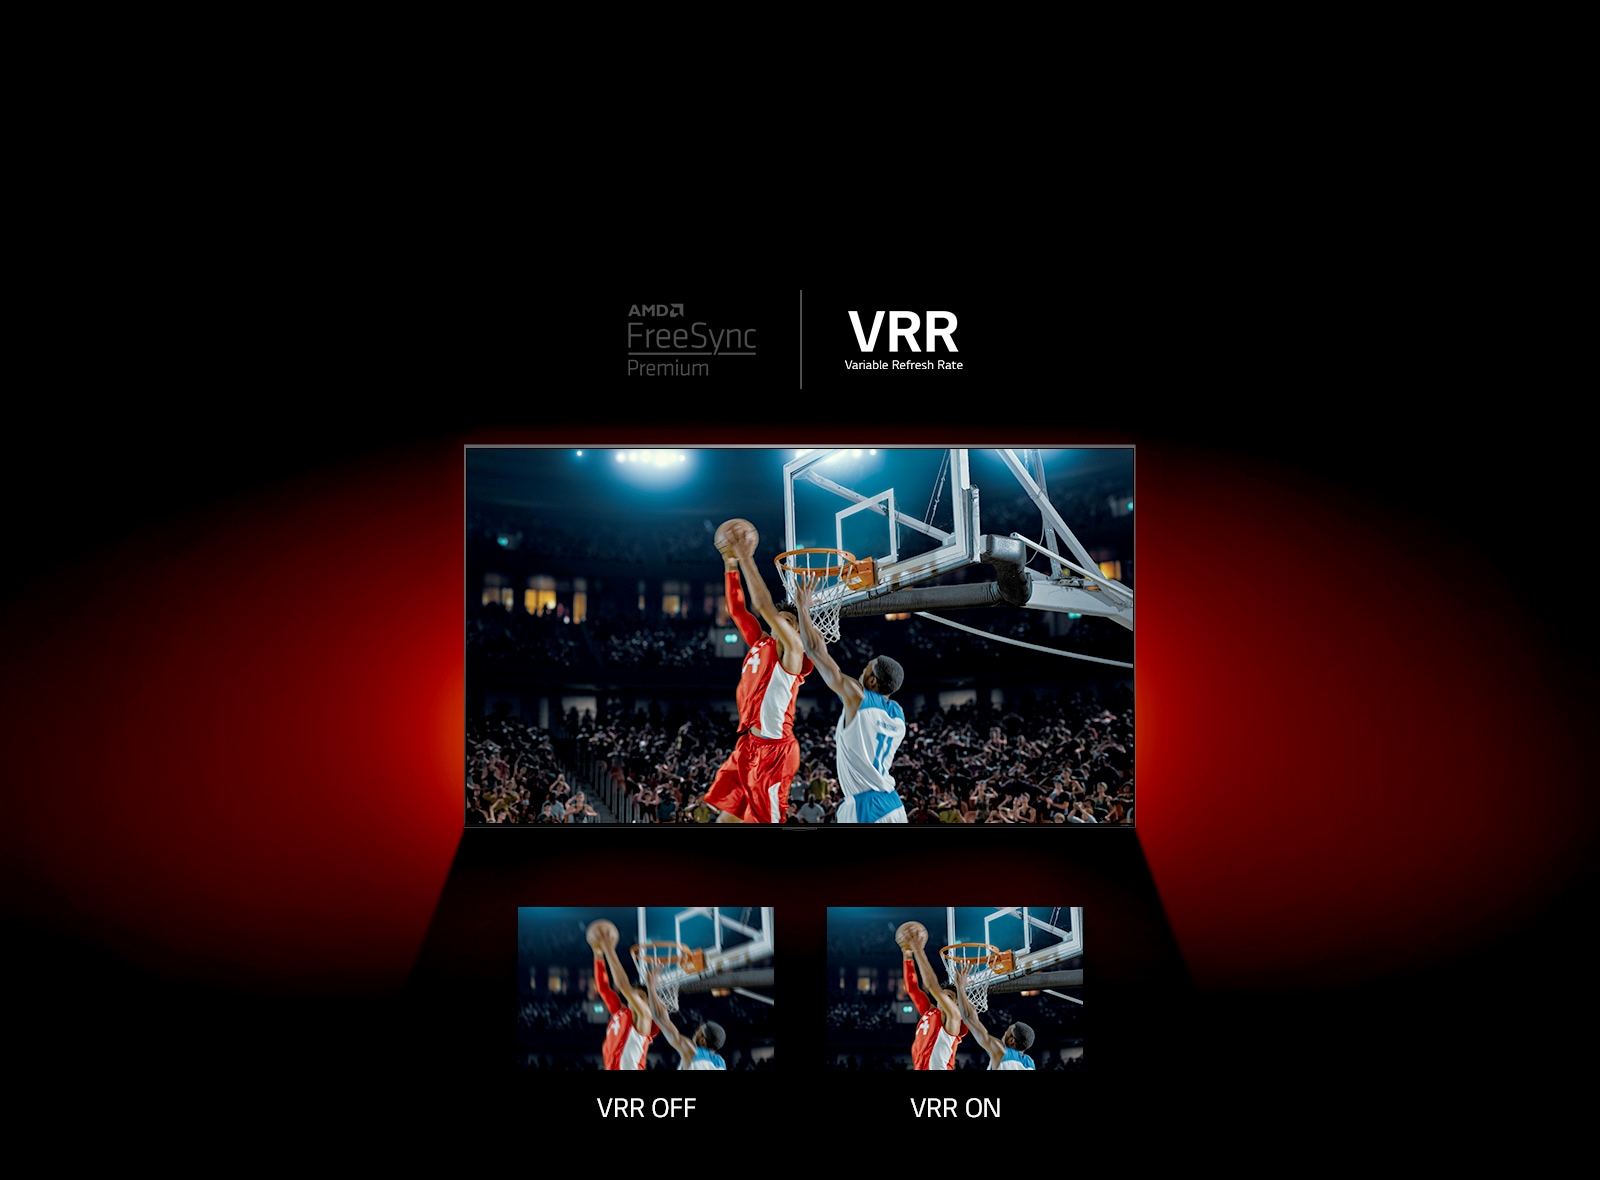 يظهر في الصورة تلفزيون QNED موضوع أمام جدار أحمر، وتعرض الصورة المبينة على الشاشة مباراة لكرة السلة بين شخصين يلعبان معًا. في الأسفل، يوجد مربعان للصور ذاتها. تظهر عبارة "VRR OFF" (إيقاف معدل التحديث المتغير) ناحية اليسار، وتبدو الصورة غير واضحة، أما على اليمين، فتوجد عبارة "VRR ON" (تشغيل معدل التحديث المتغير)، وتُعرَض الصورة ذاتها.